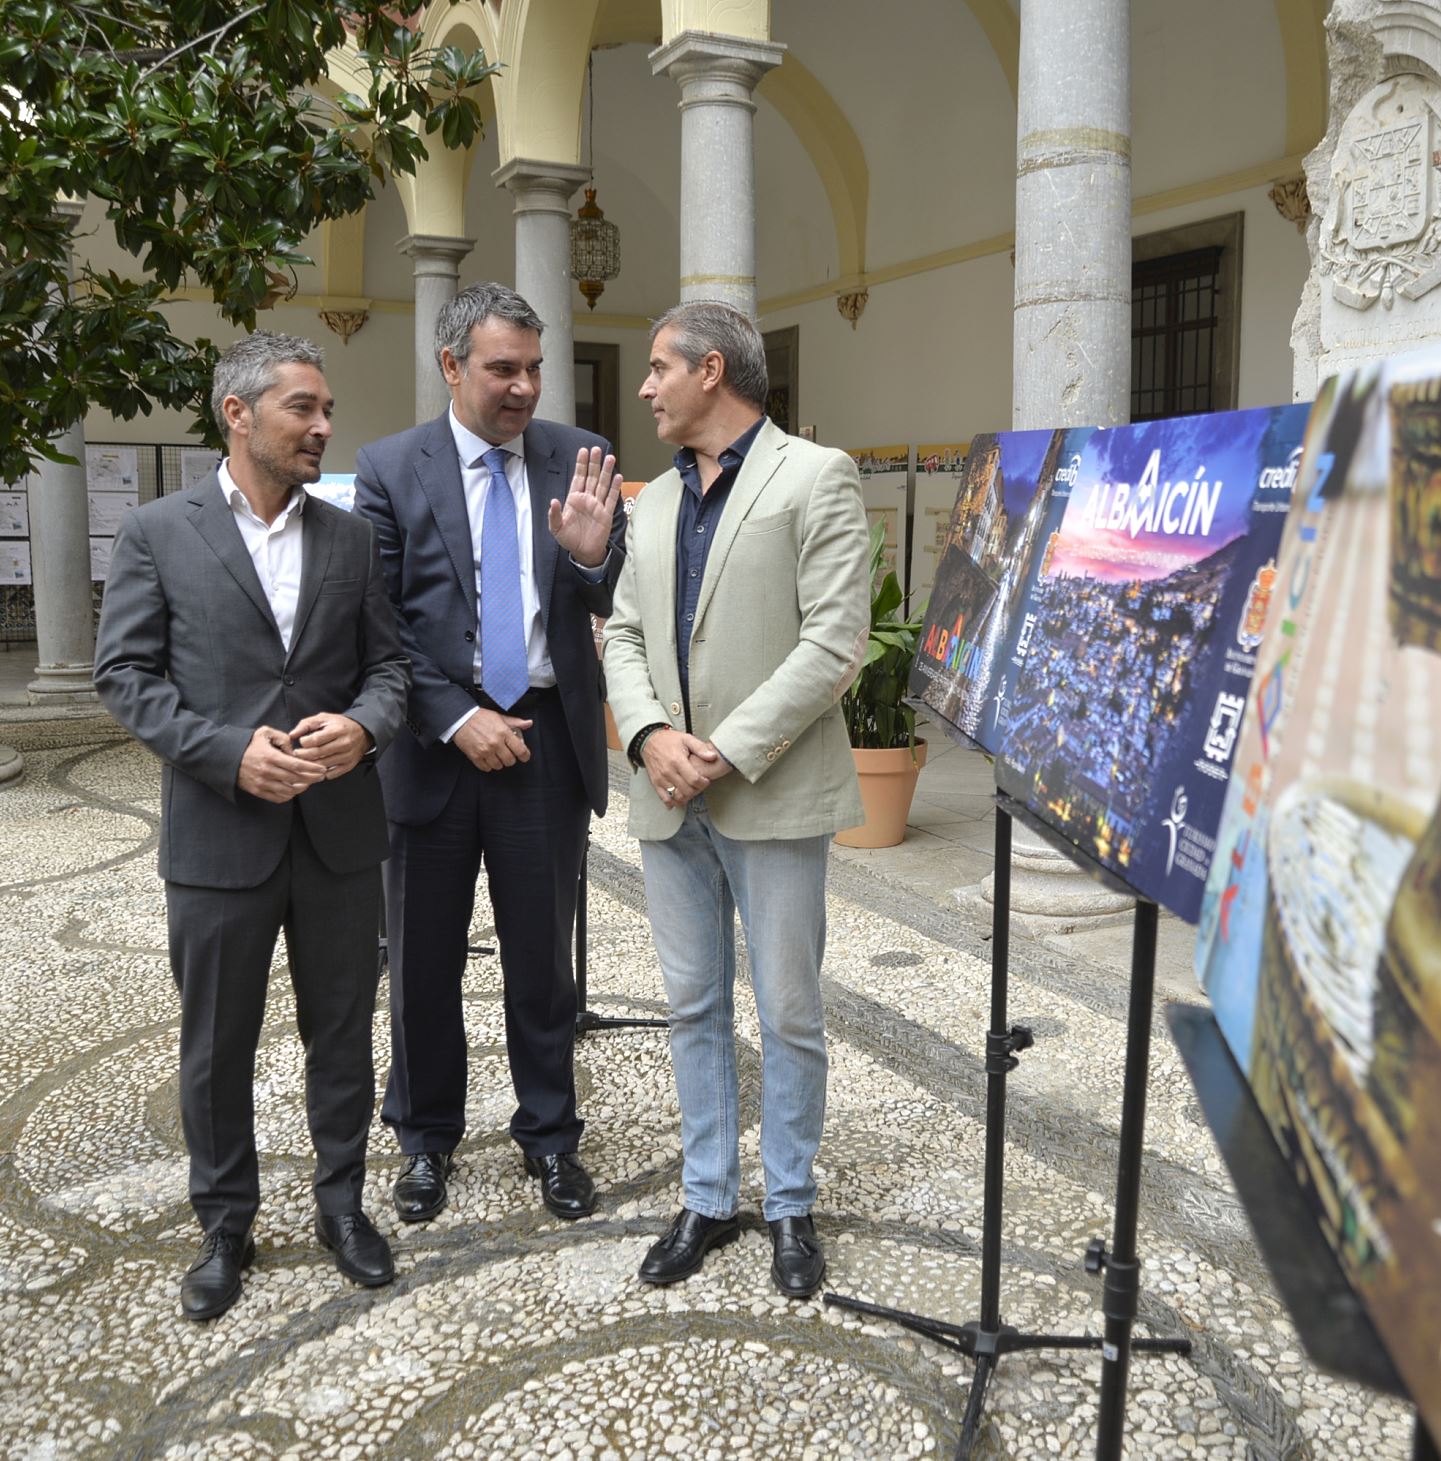 ©Ayto.Granada: El Ayuntamiento de Granada lanza 50.000 credibuses conmemorativos del 25 aniversario del Albaicn como Patrimonio de la Humanidad